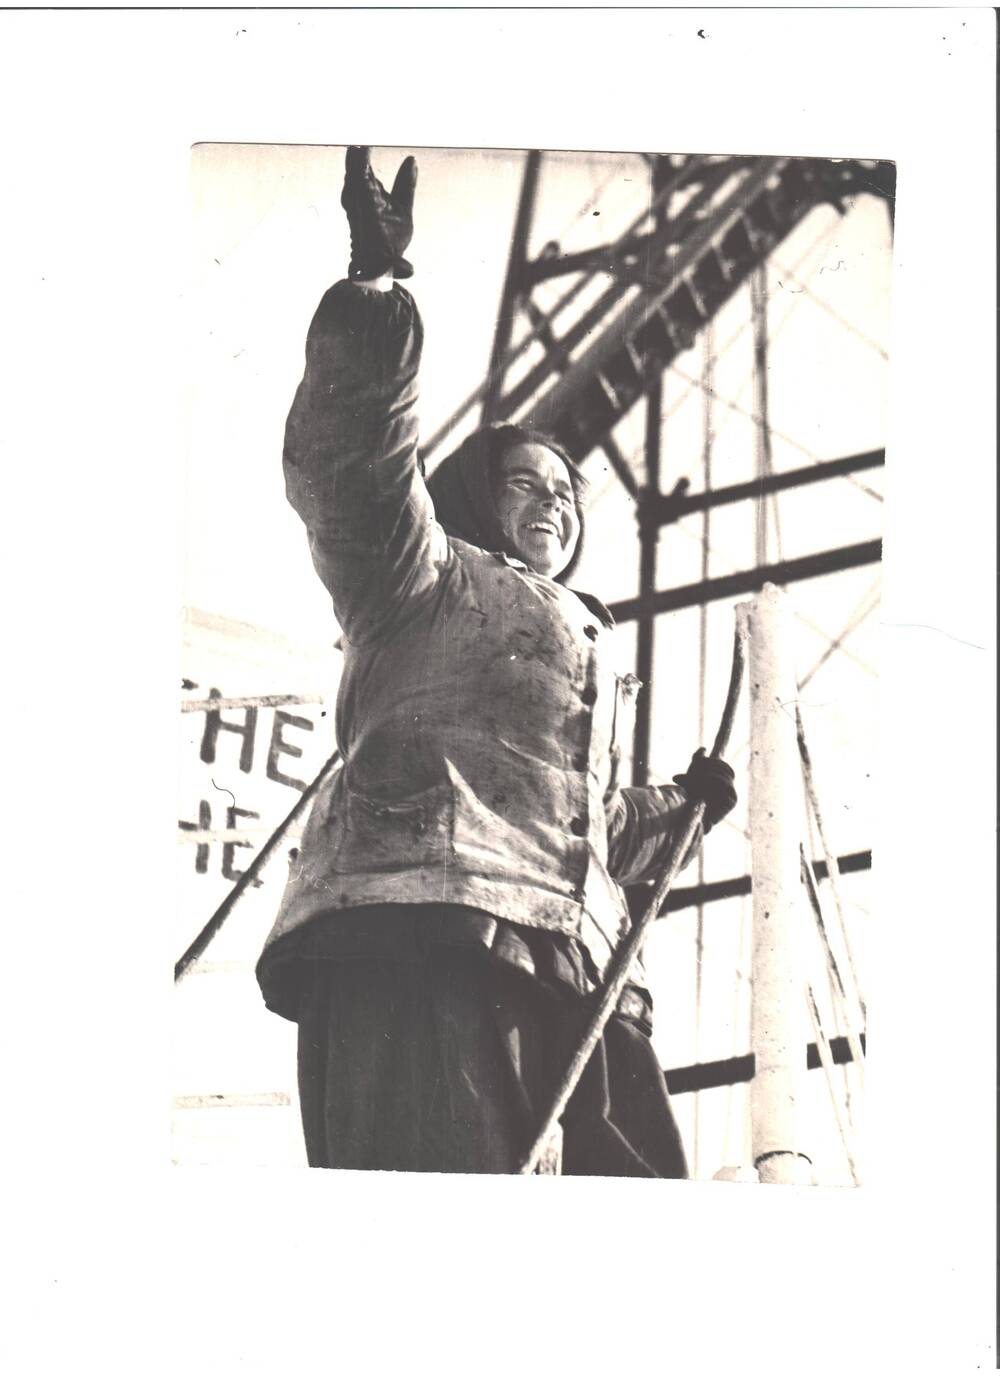 Фото. Герой Социалистического Труда - Лейла Ханифовна Марданшина во время работы буровой скважины Башнефть, фото редакции газеты Советская Башкирия, февраль 1965 года